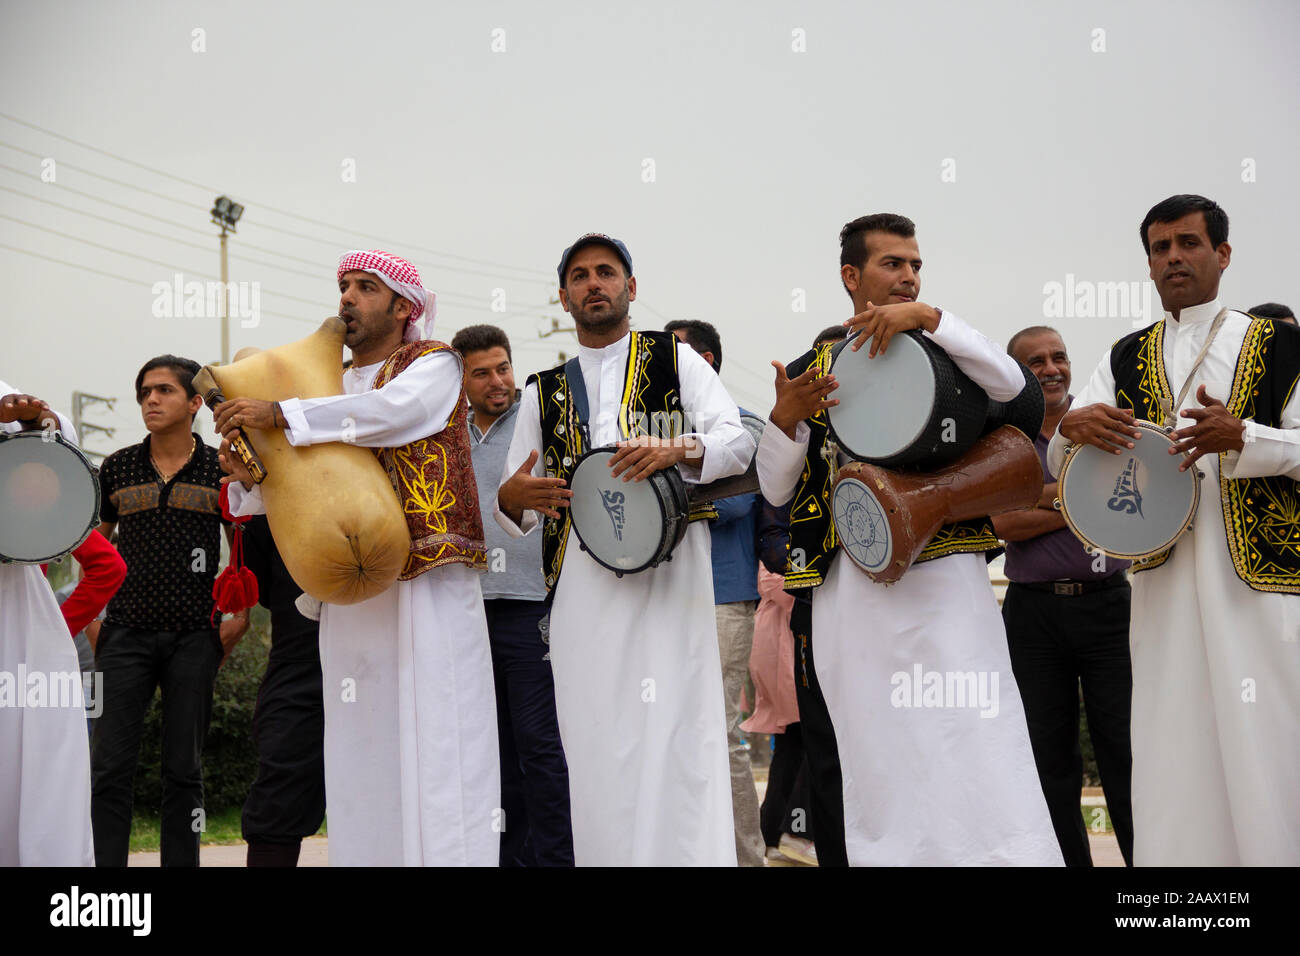 Eine Küstenstadt im Süden des Iran mit einem traditionellen gemischten Kultur der Perser und Araber. Hier eine Hochzeit Musik Band spielt Musik für die Zeremonie. Stockfoto